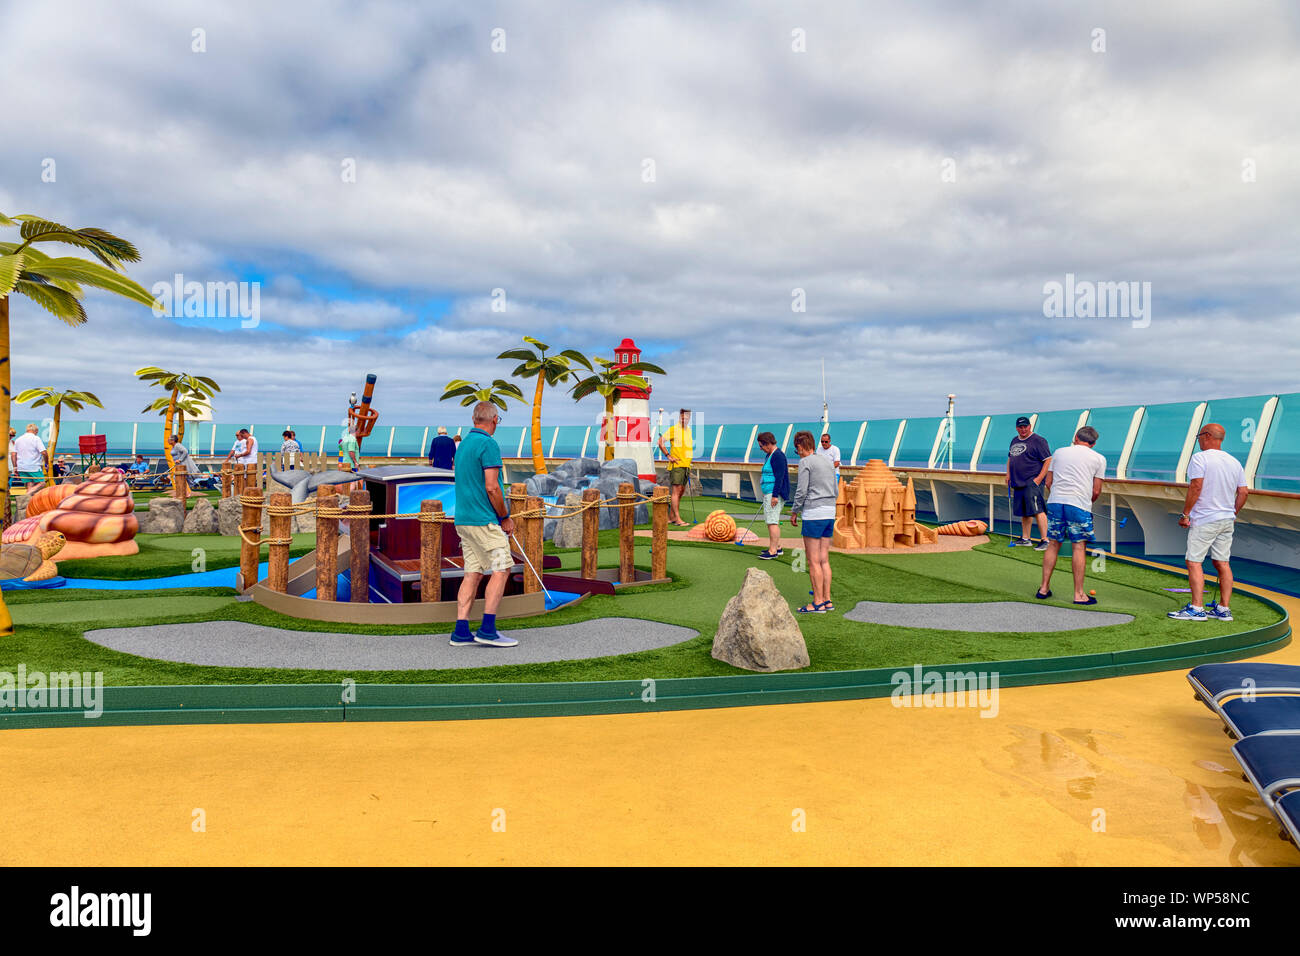 Unabhängigkeit der Meere Außendeck Freizeitbeschäftigung Erholung Sport verrückter Golfplatz Royal Caribbean Cruise Ship Unabhängigkeit der Meere Stockfoto